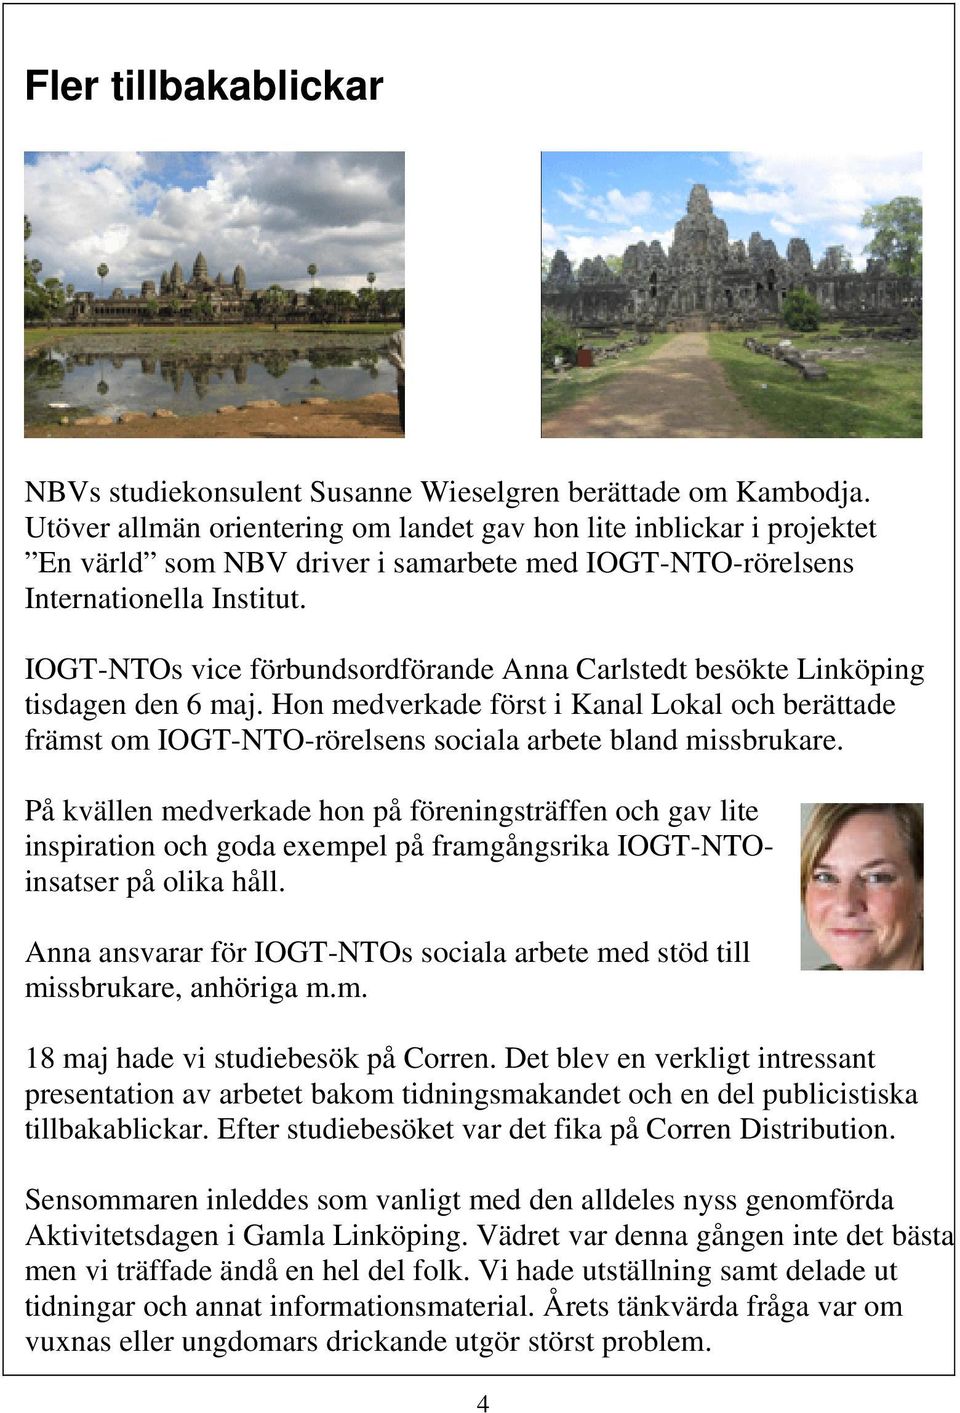 IOGT-NTOs vice förbundsordförande Anna Carlstedt besökte Linköping tisdagen den 6 maj. Hon medverkade först i Kanal Lokal och berättade främst om IOGT-NTO-rörelsens sociala arbete bland missbrukare.